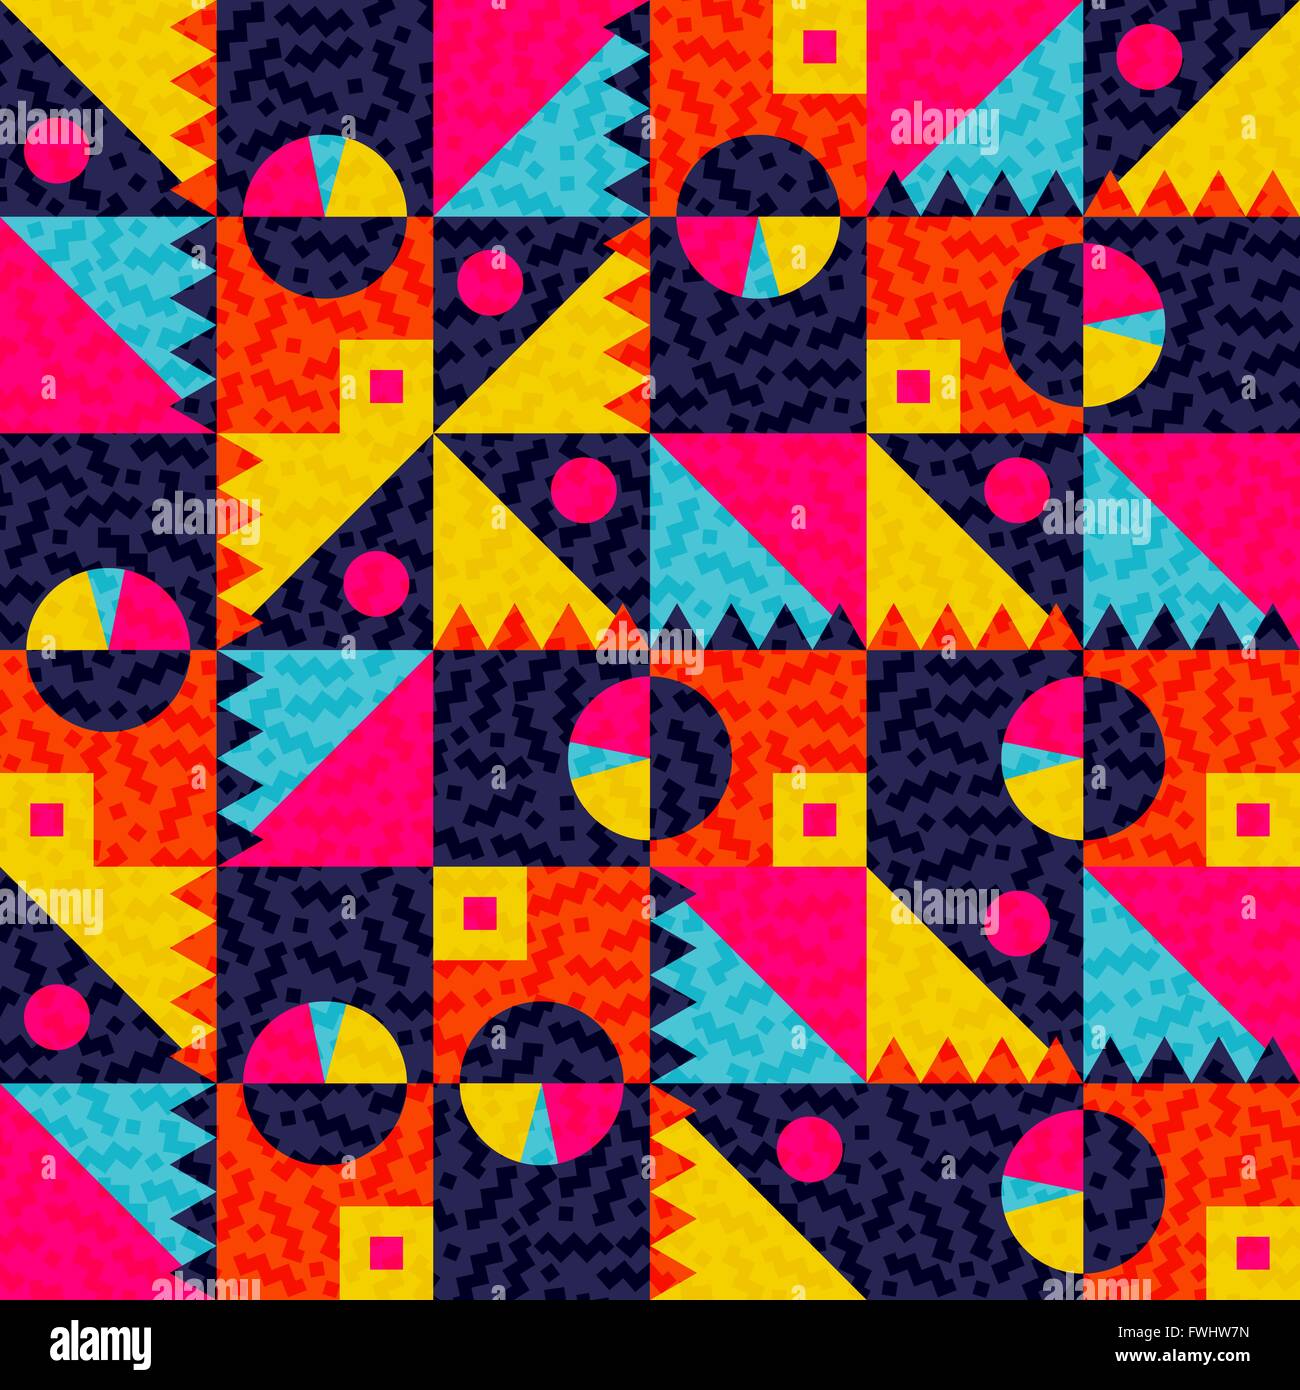 Modèle logique des formes géométriques dans des couleurs d'été, art tribal moderne inspiré l'arrière-plan. Vecteur EPS10. Illustration de Vecteur